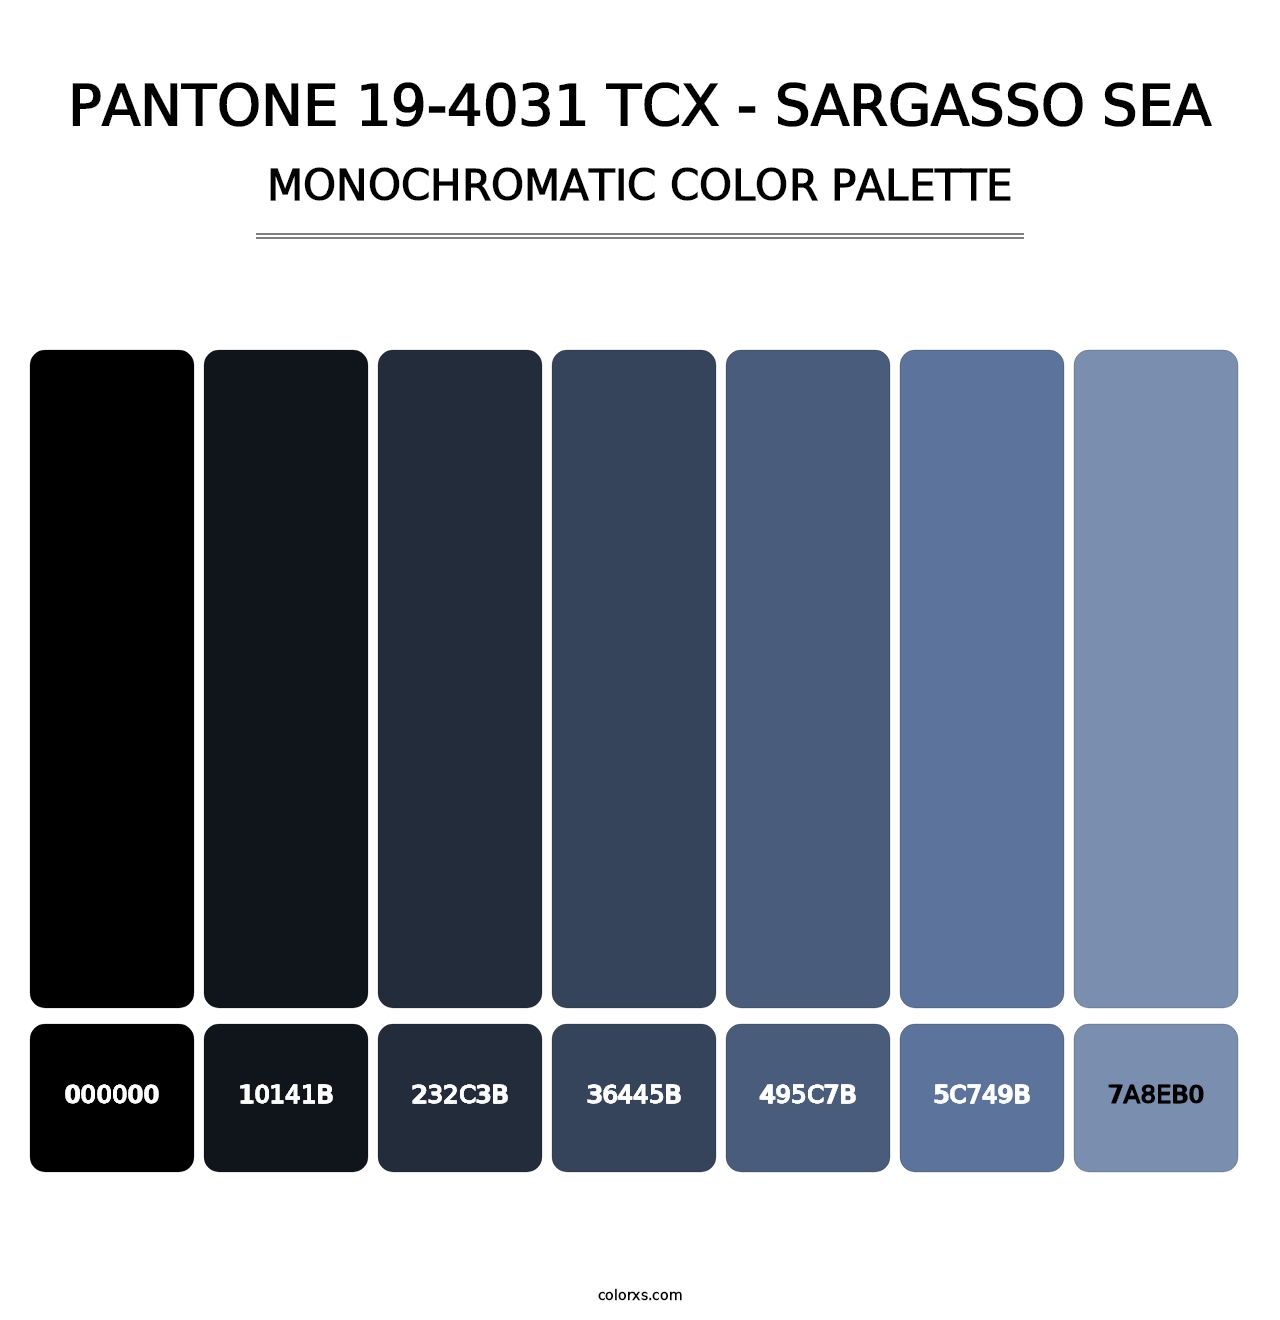 PANTONE 19-4031 TCX - Sargasso Sea - Monochromatic Color Palette